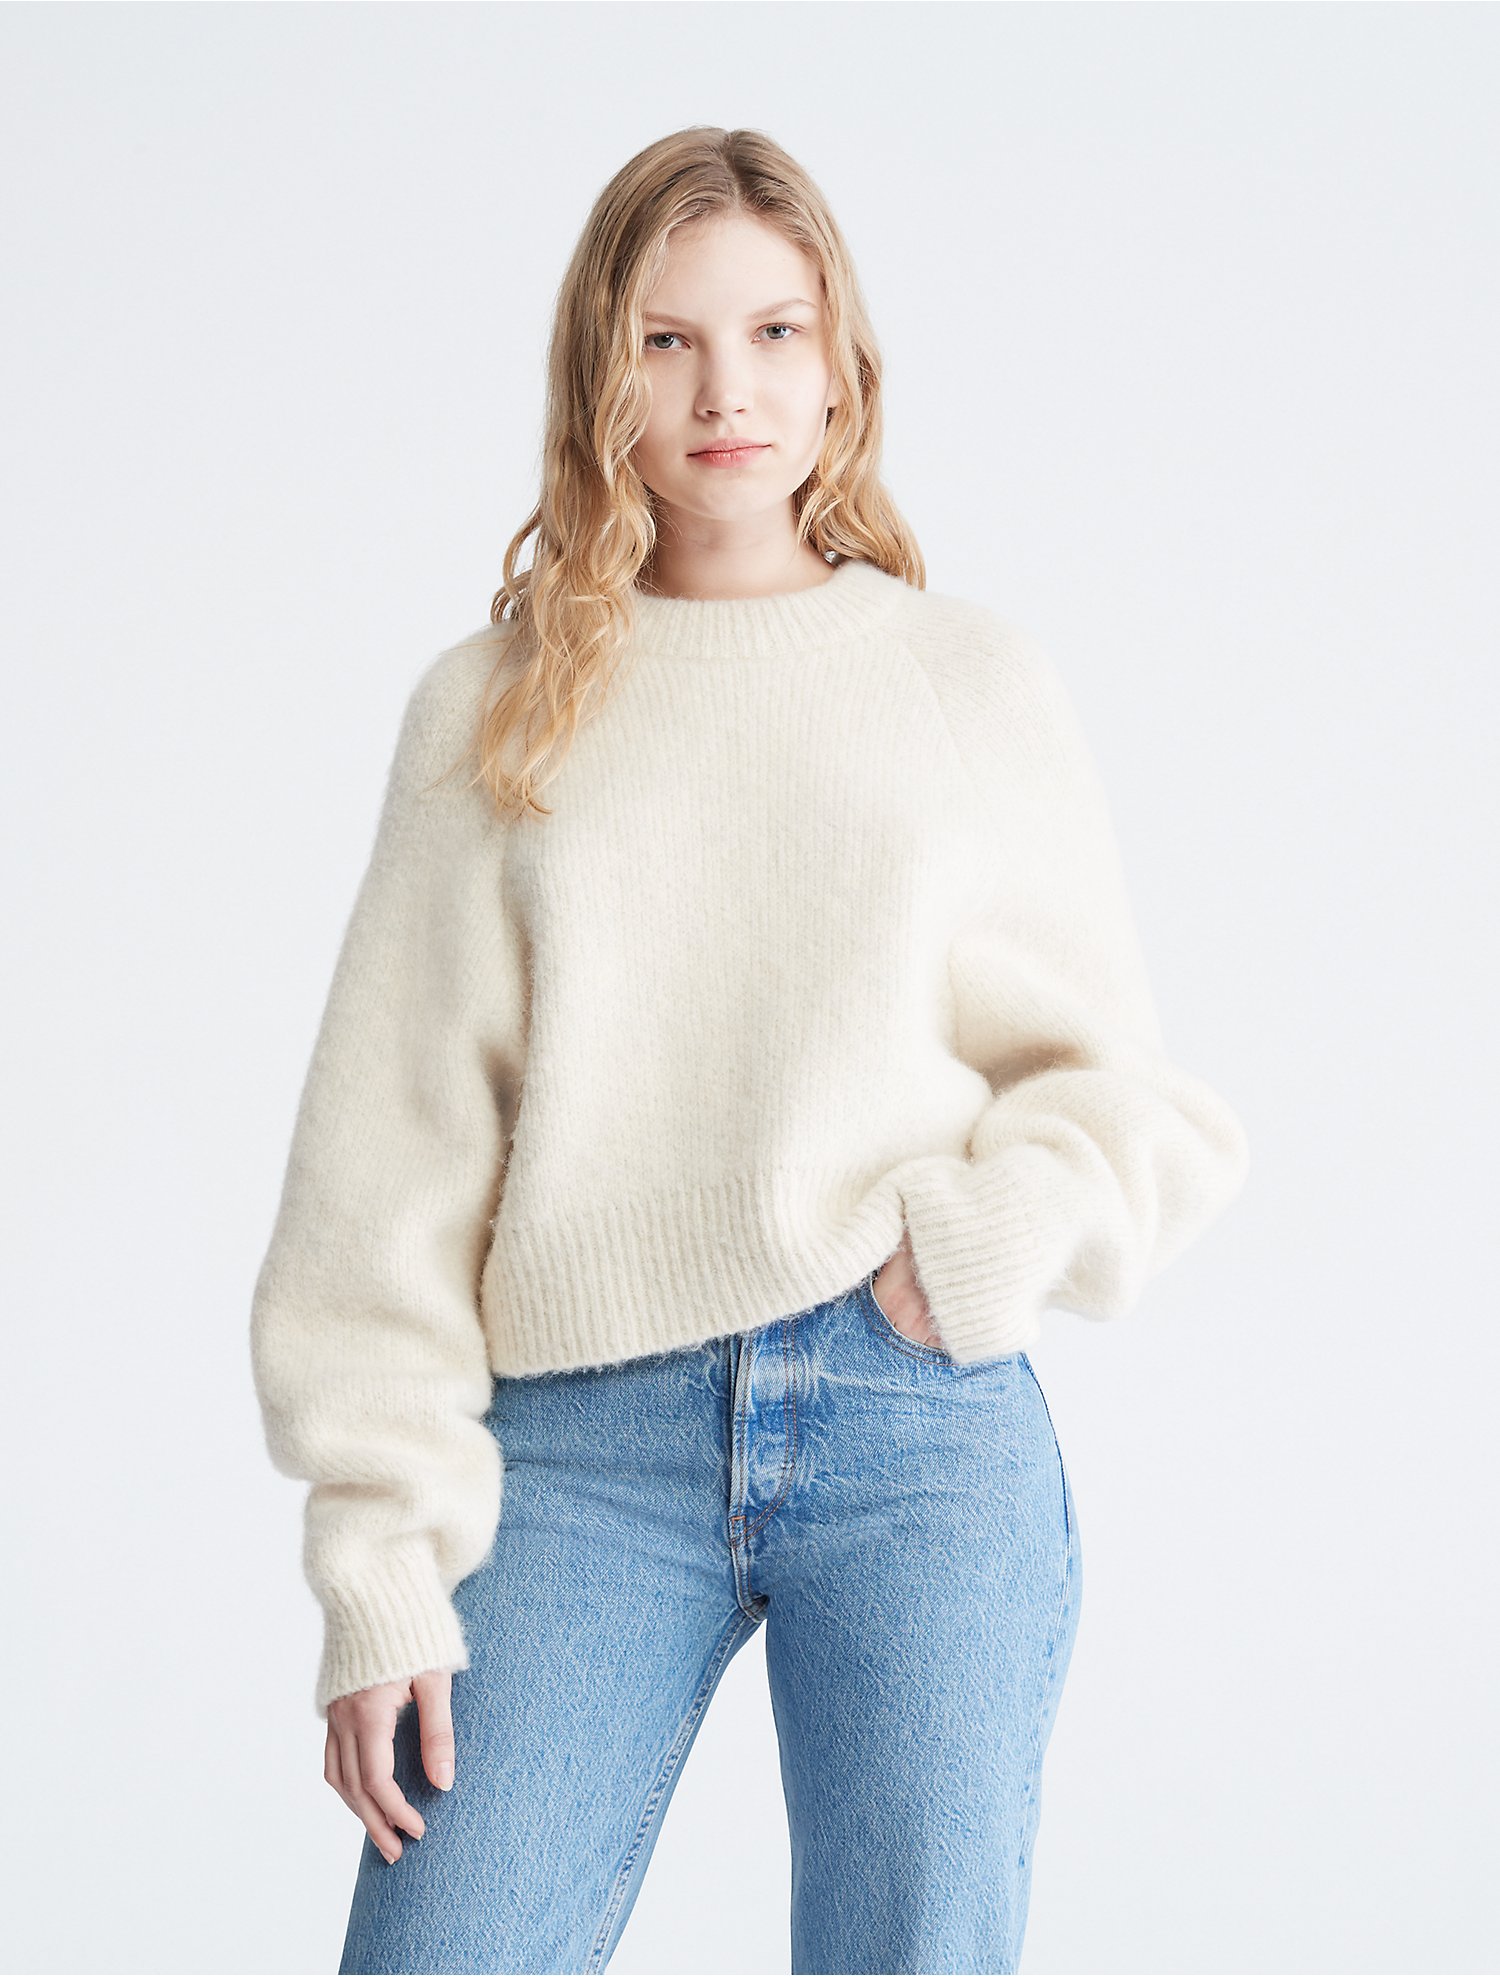 Descubrir 83+ imagen calvin klein fuzzy sweater